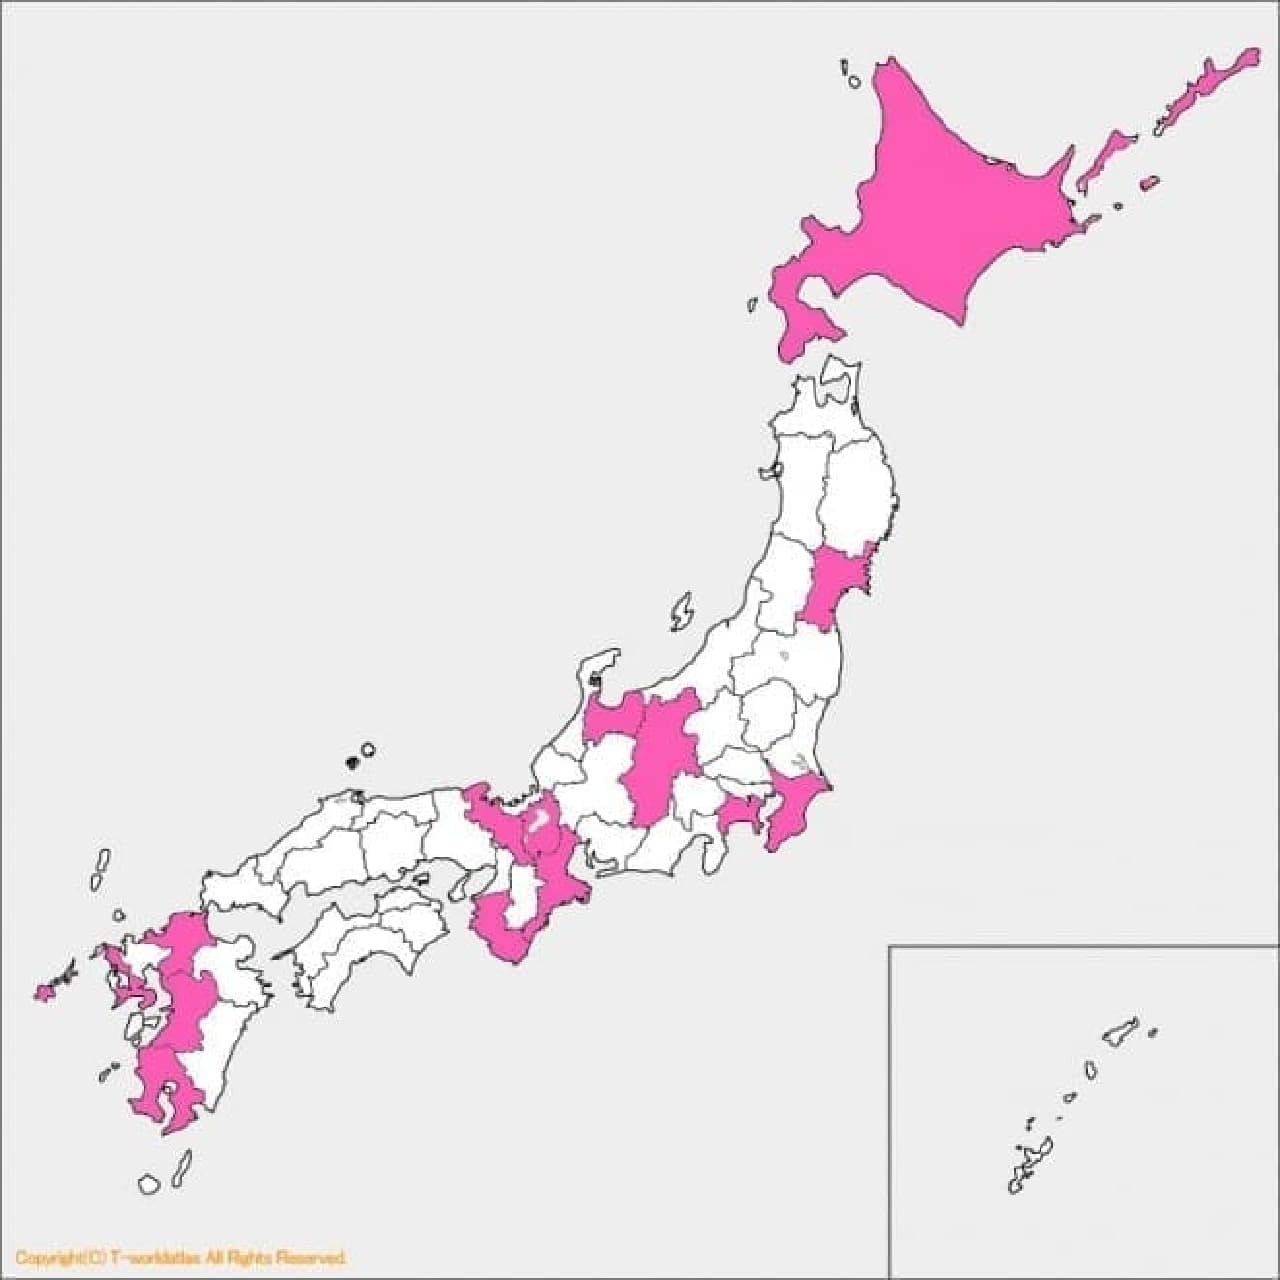 Are Tohoku and Chugoku / Shikoku regions weak?